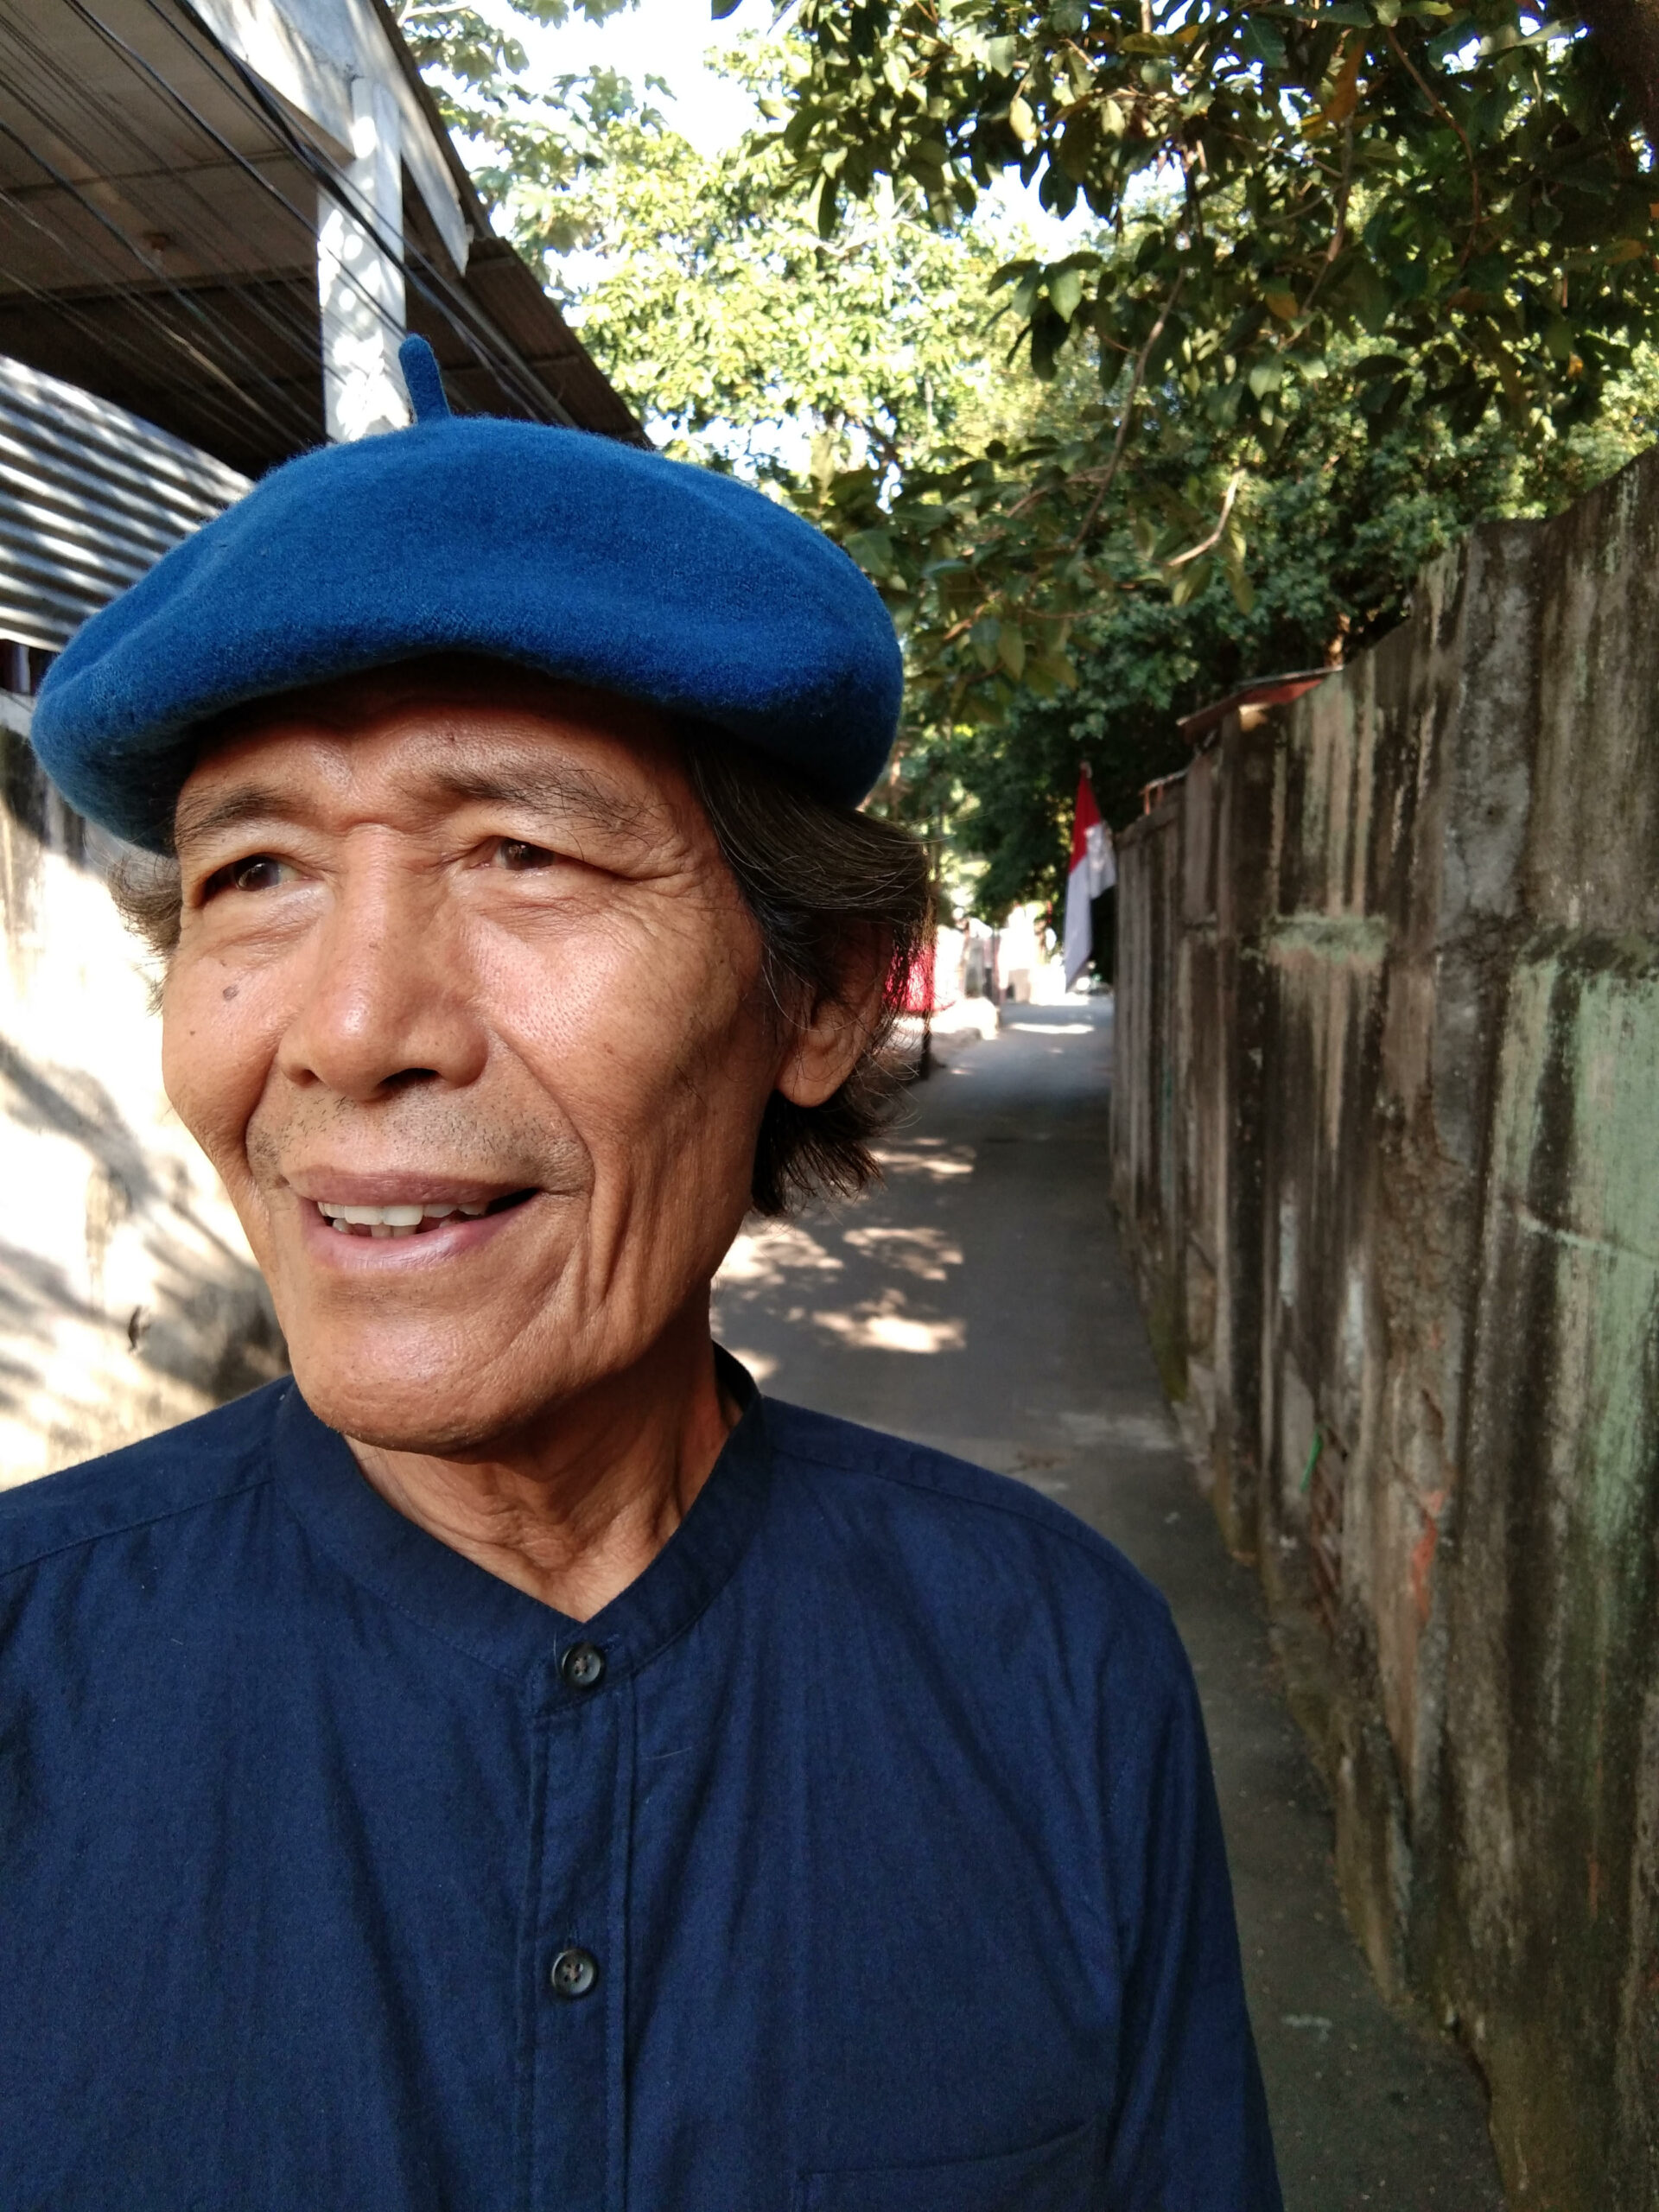 Martin Aleida wearing a blue beret, standing in an alleyway in Jakarta - New Naratif